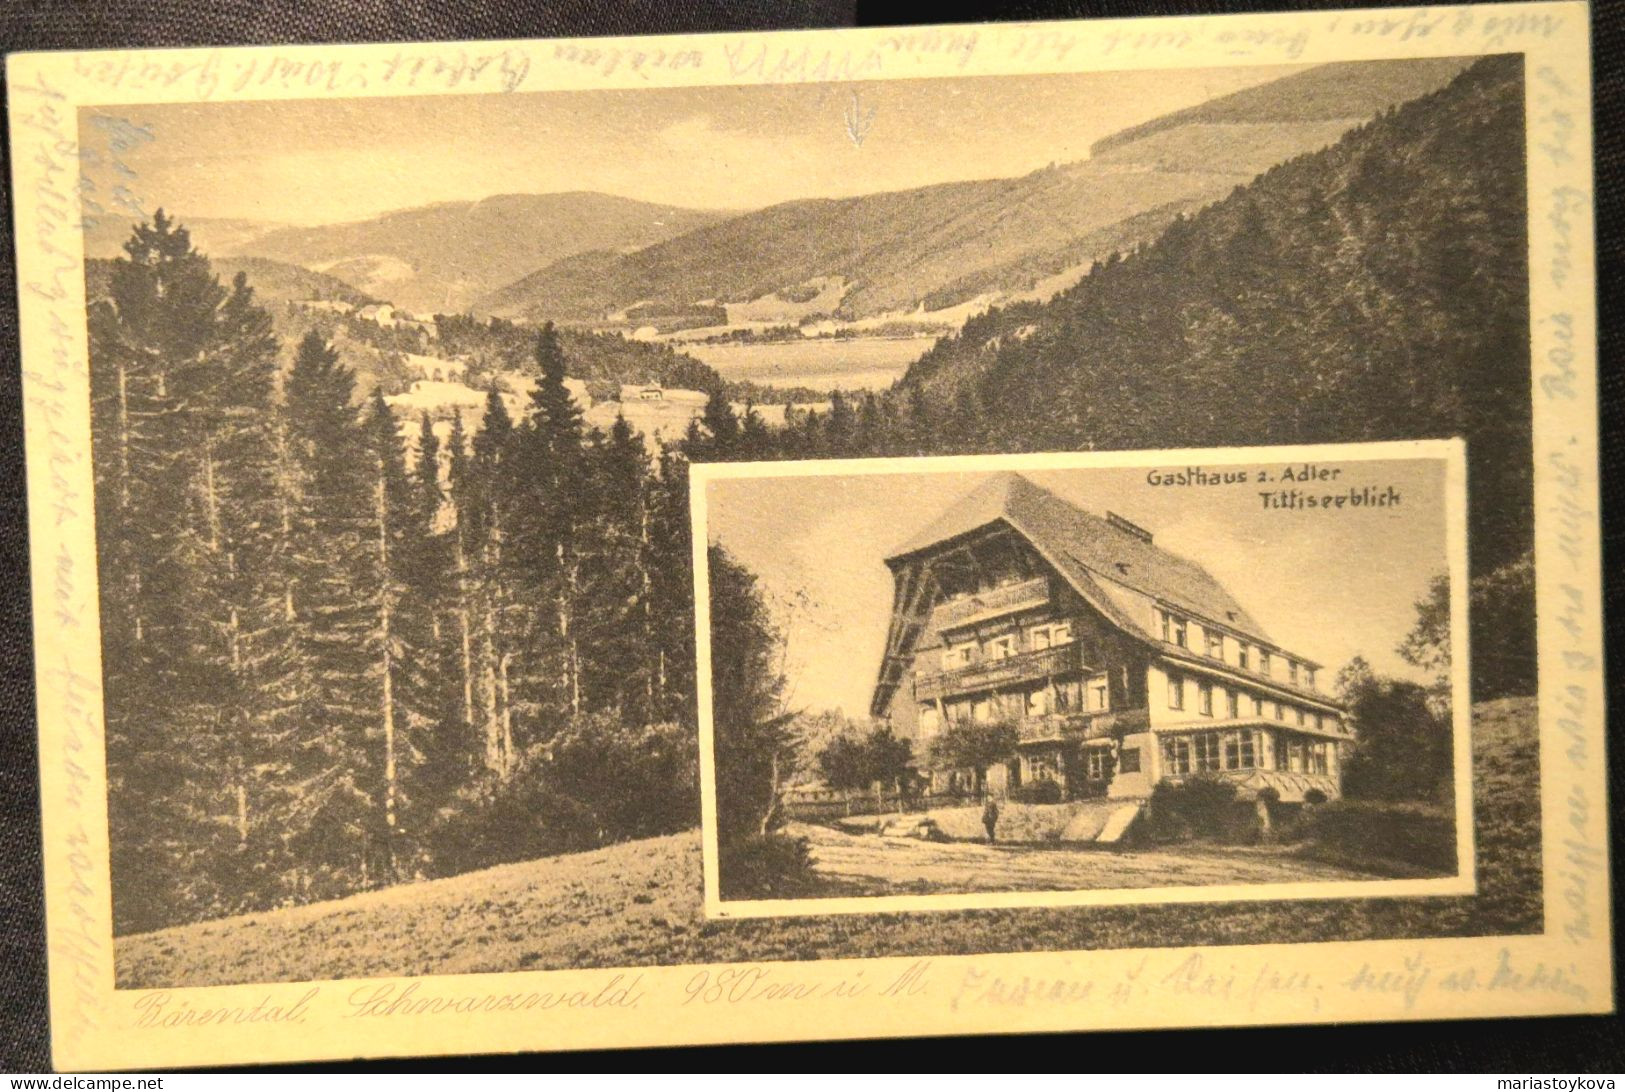 1927. Bärental In Schwarzwald. Gasthaus Zum Adler. - Feldberg